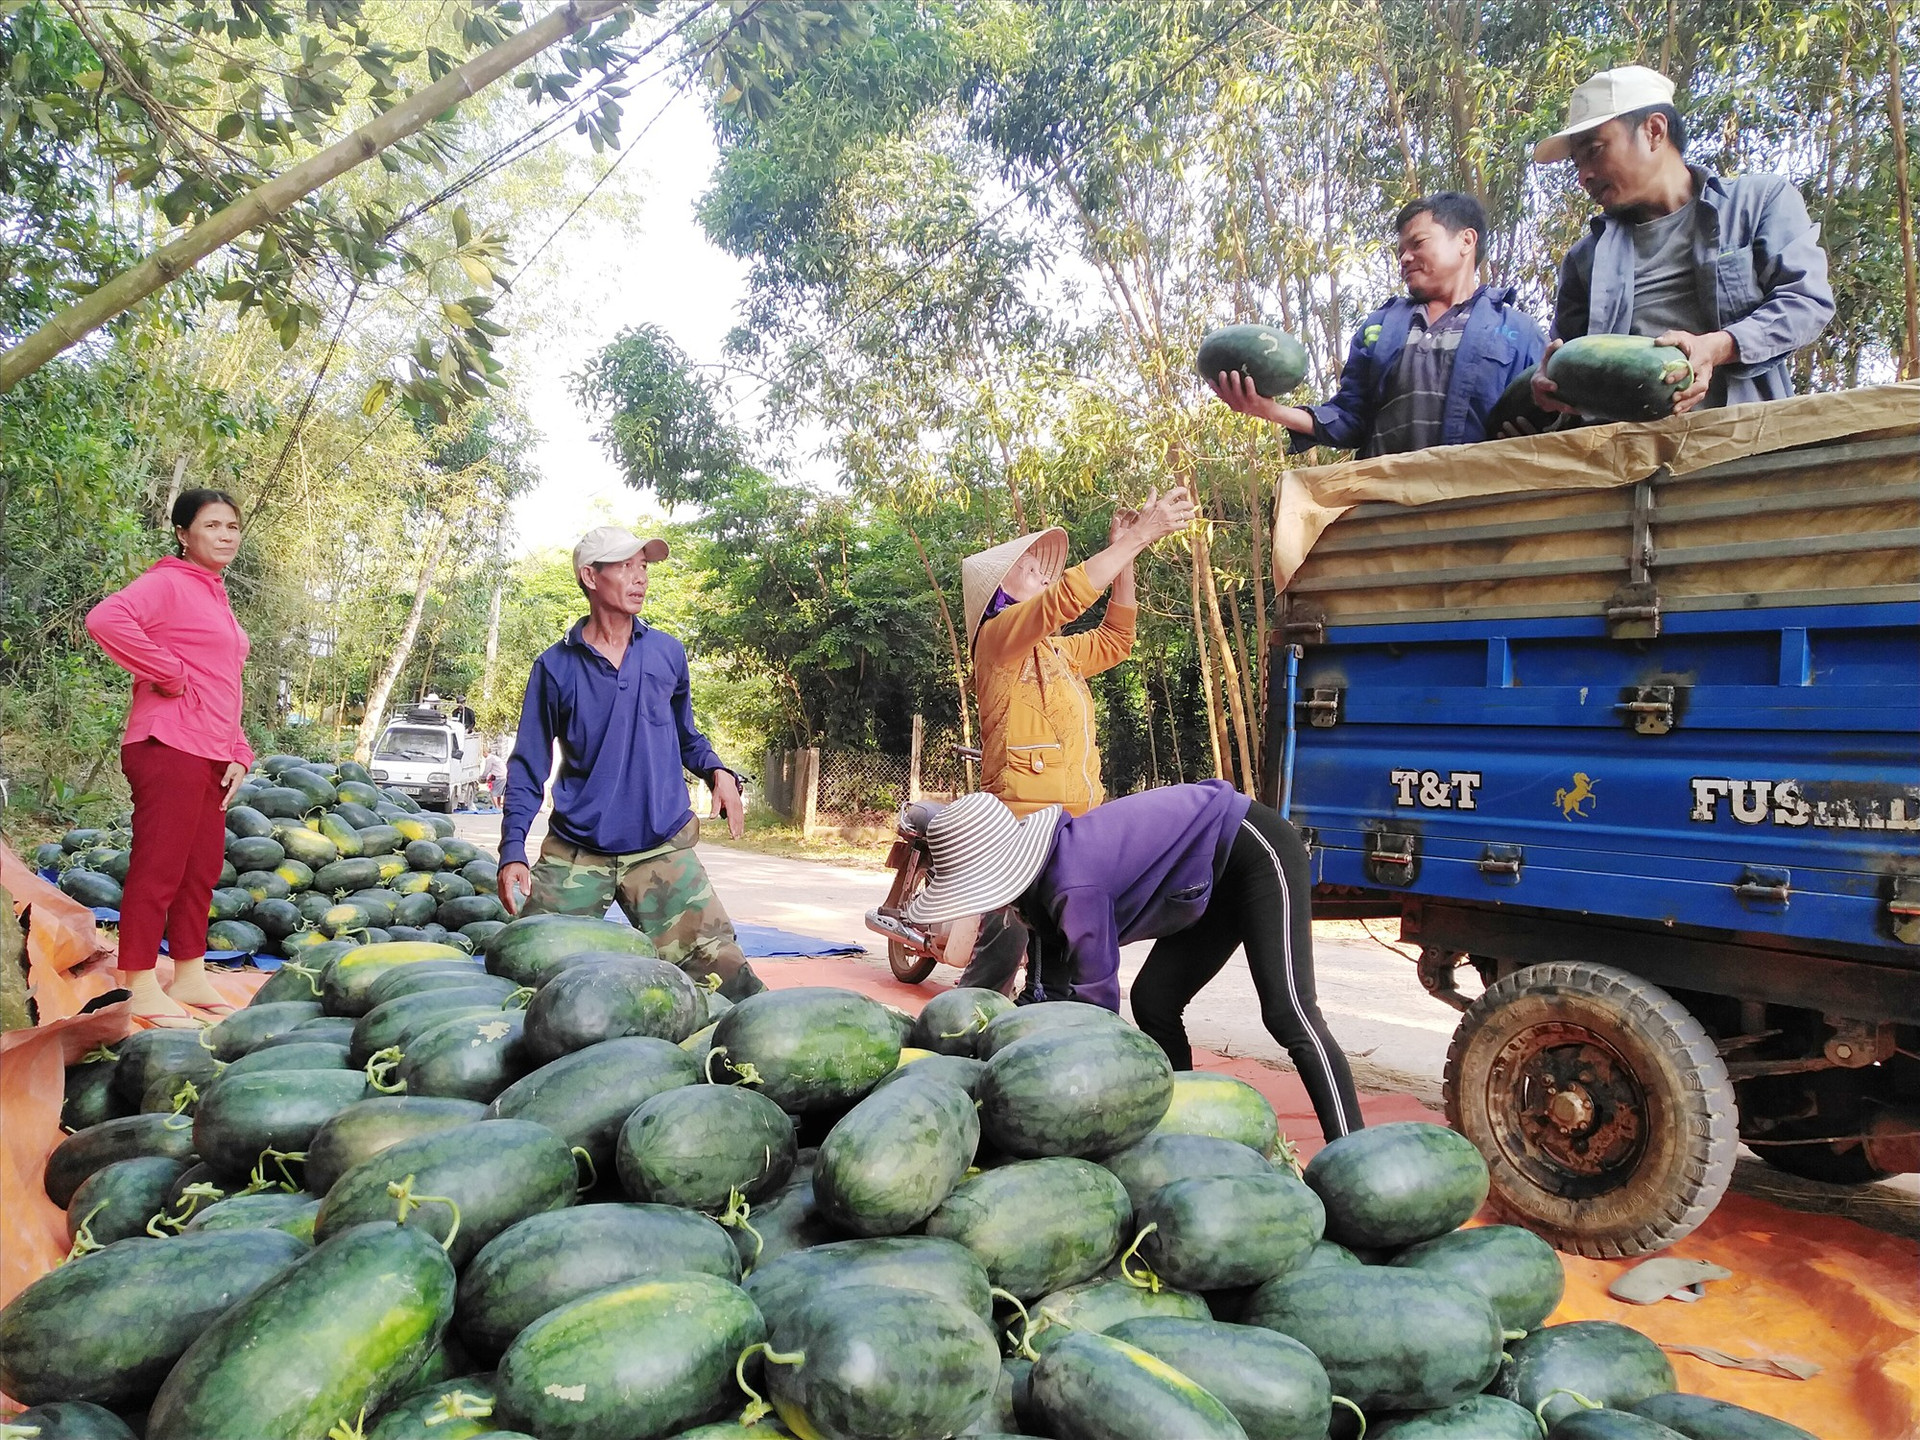 Bình quân hằng năm, người trồng dưa hấu ở Phú Ninh thu về gần 100 tỷ đồng. Ảnh: N.S